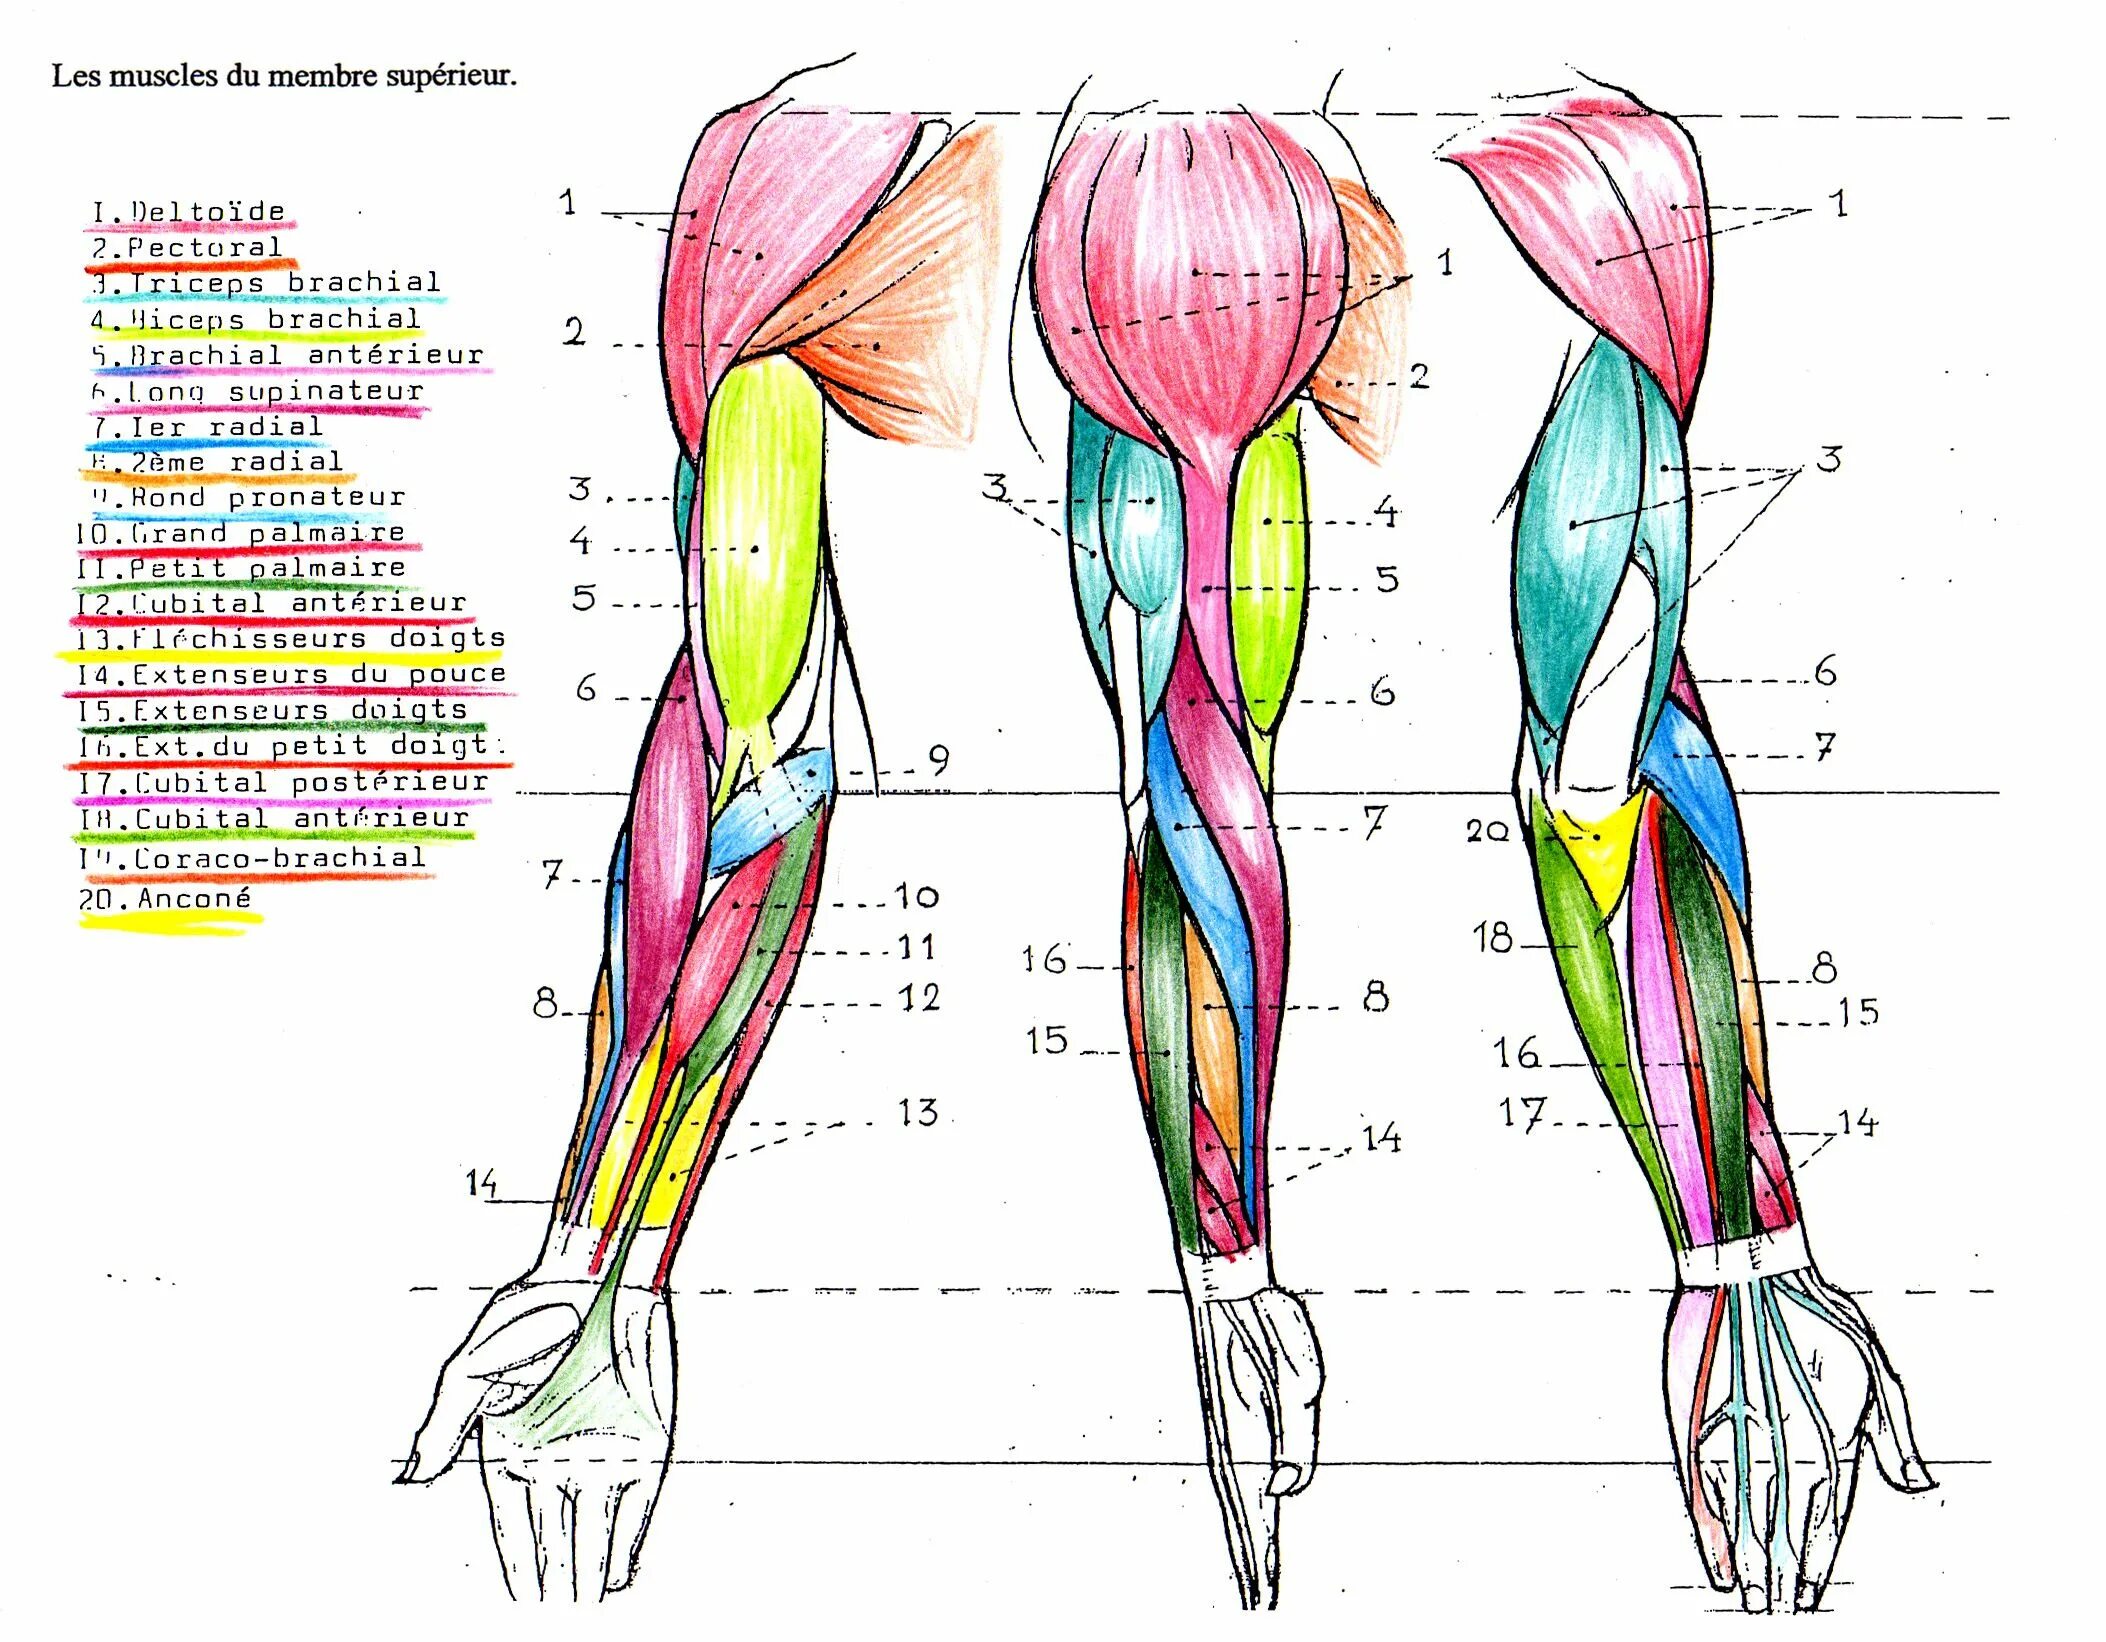 Анатомия мышц рук человека. Мышцы руки анатомия человека. Мышцы руки схема. Рука анатомия строение мышц. Мышцы руки анатомия человека картинки.